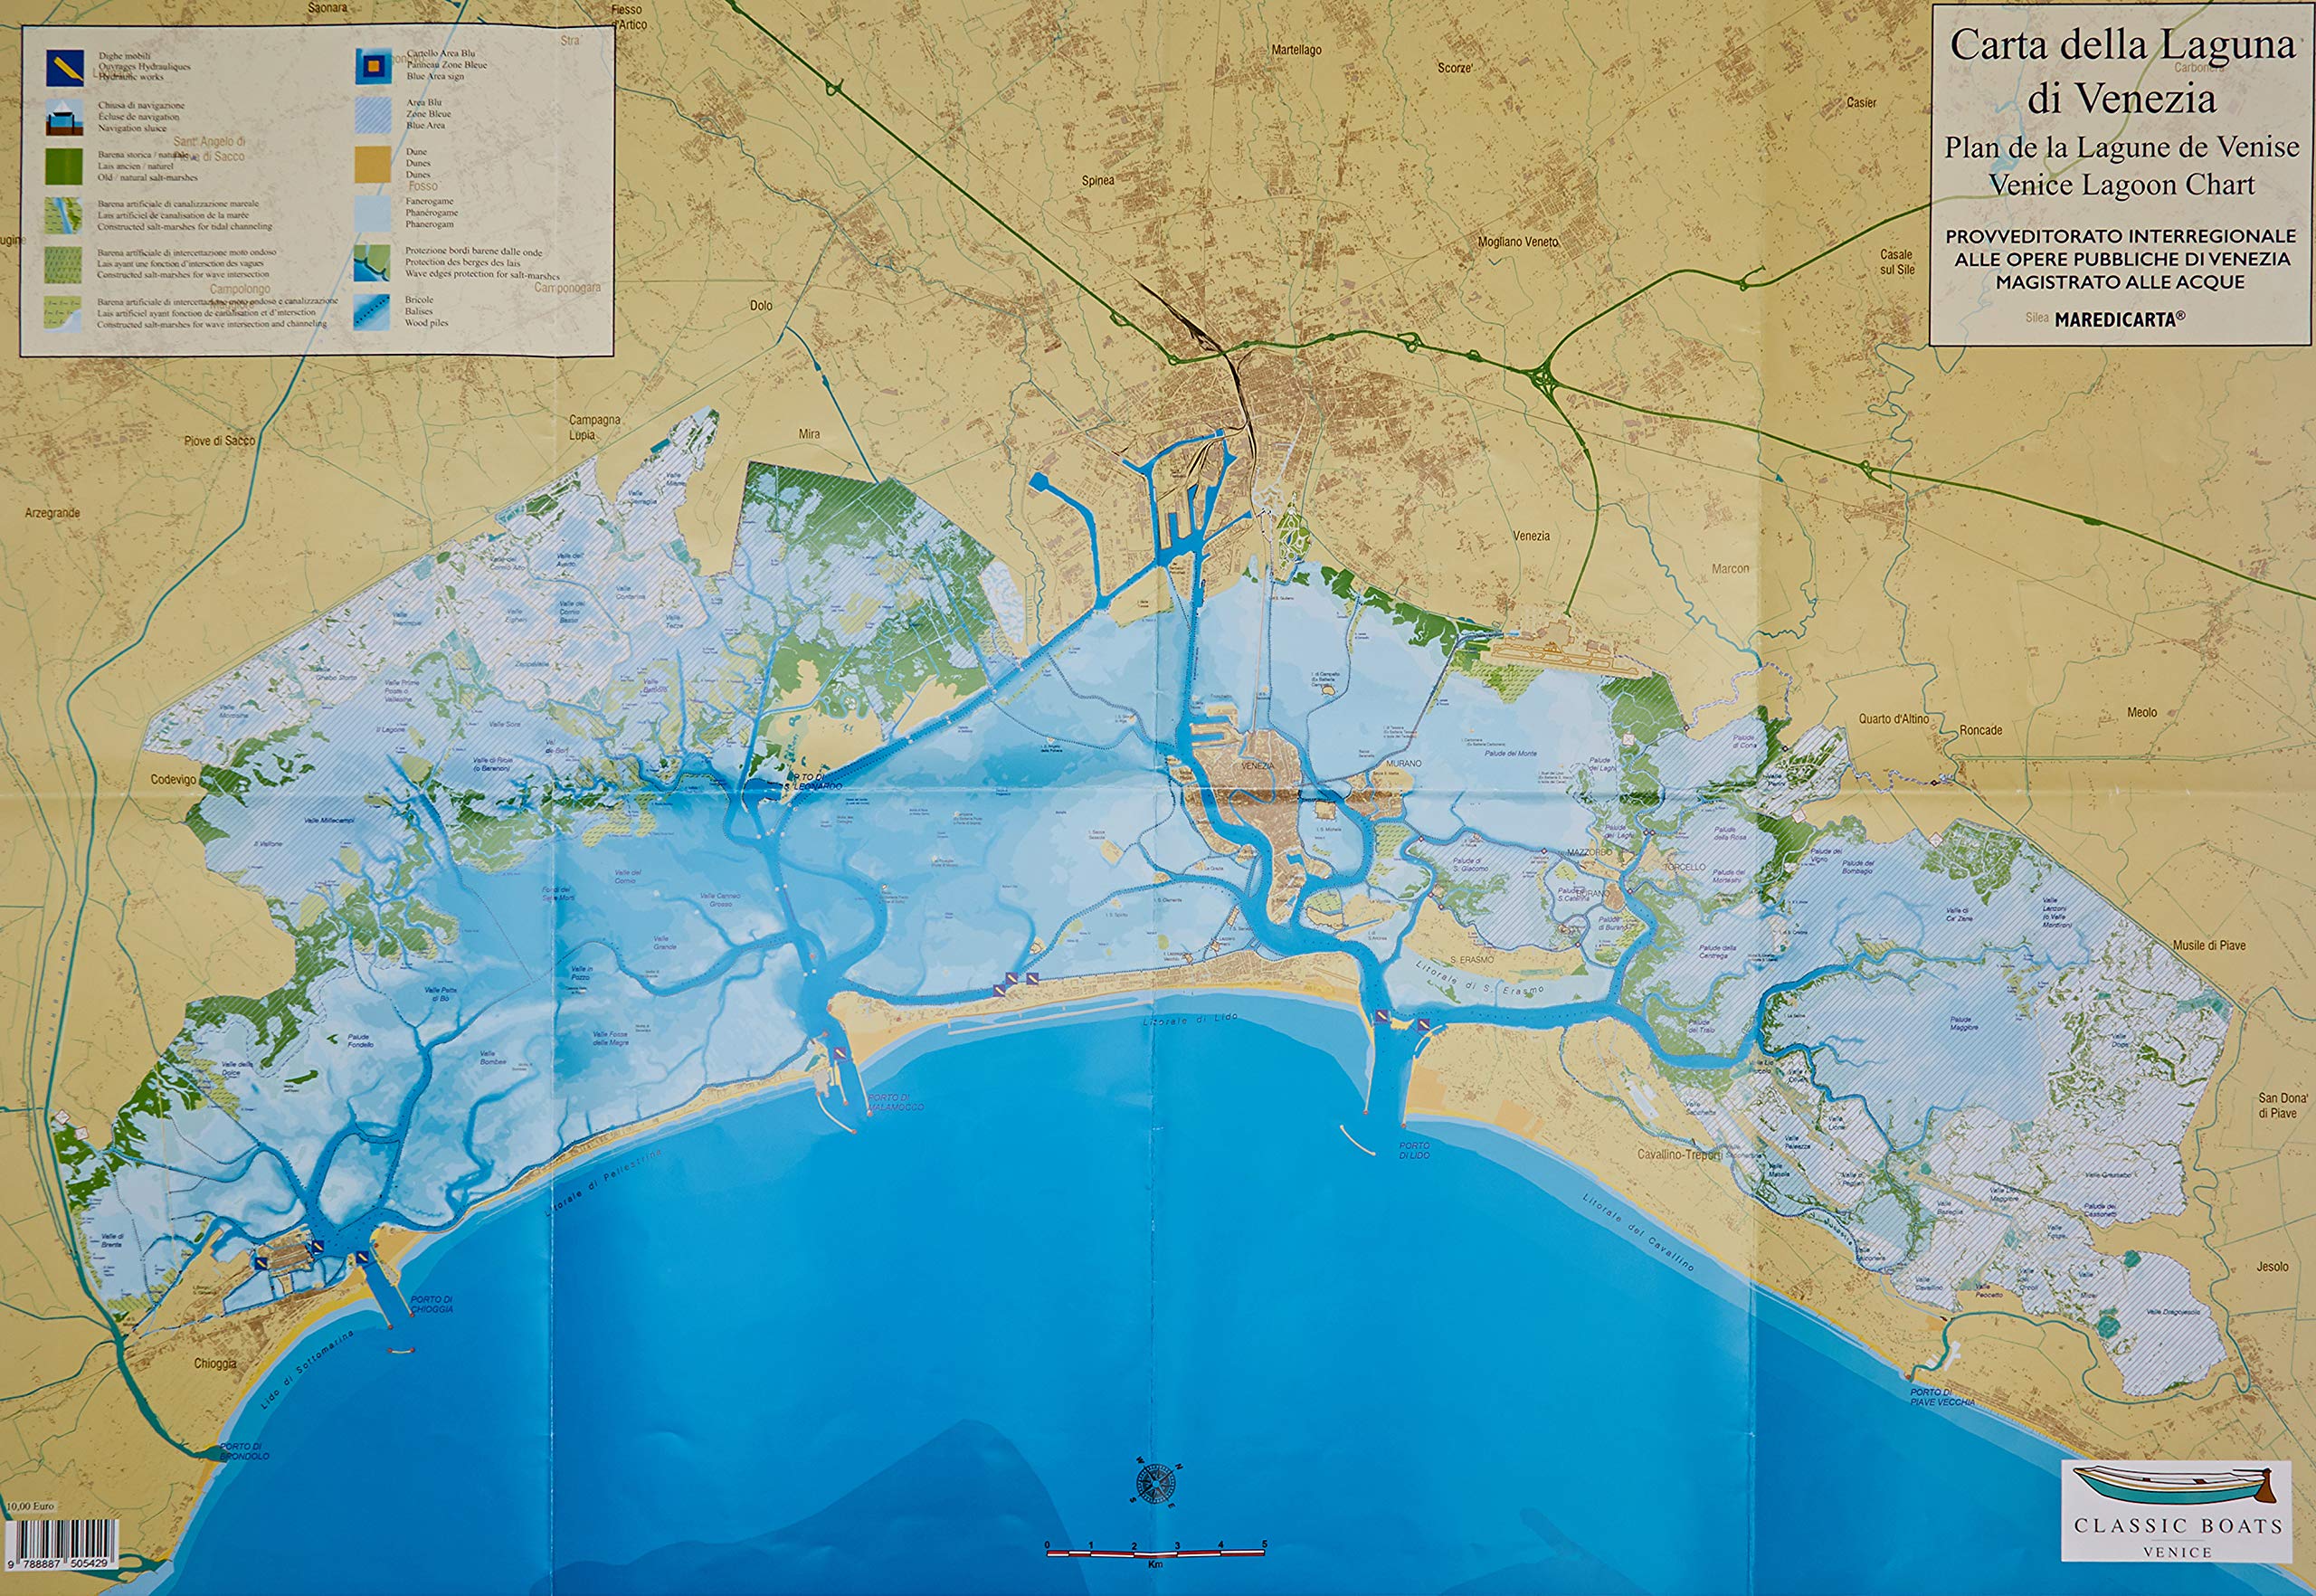 Carta della laguna di venezia - plan de la lagune - venice lagoon chart - 1:50.000 - versione piegata